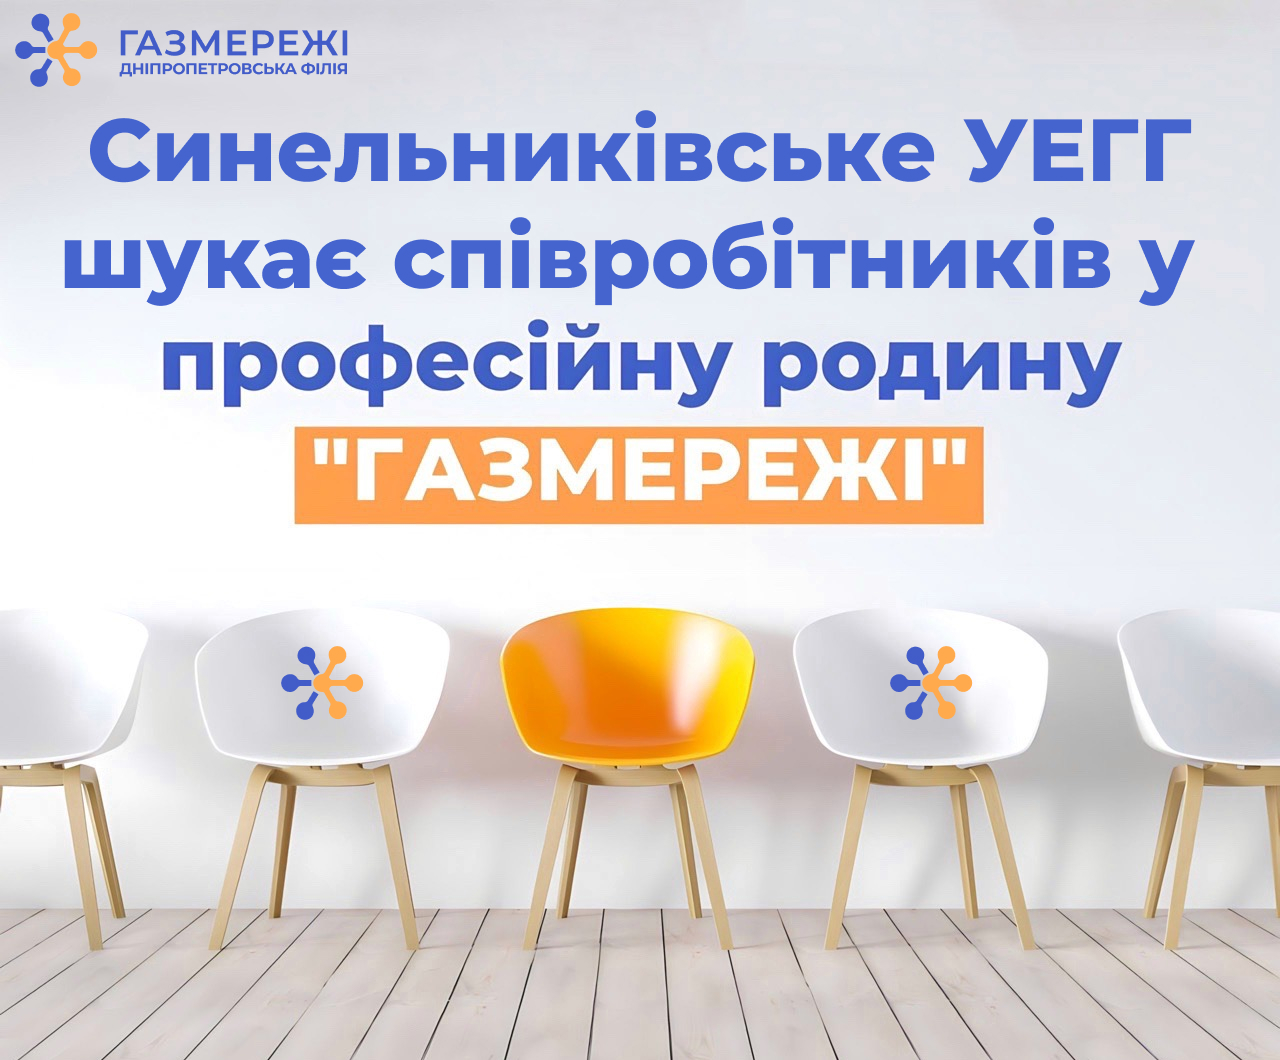 Дніпропетровська філія «Газмережі» запрошує працівників на роботу у м. Синельникове